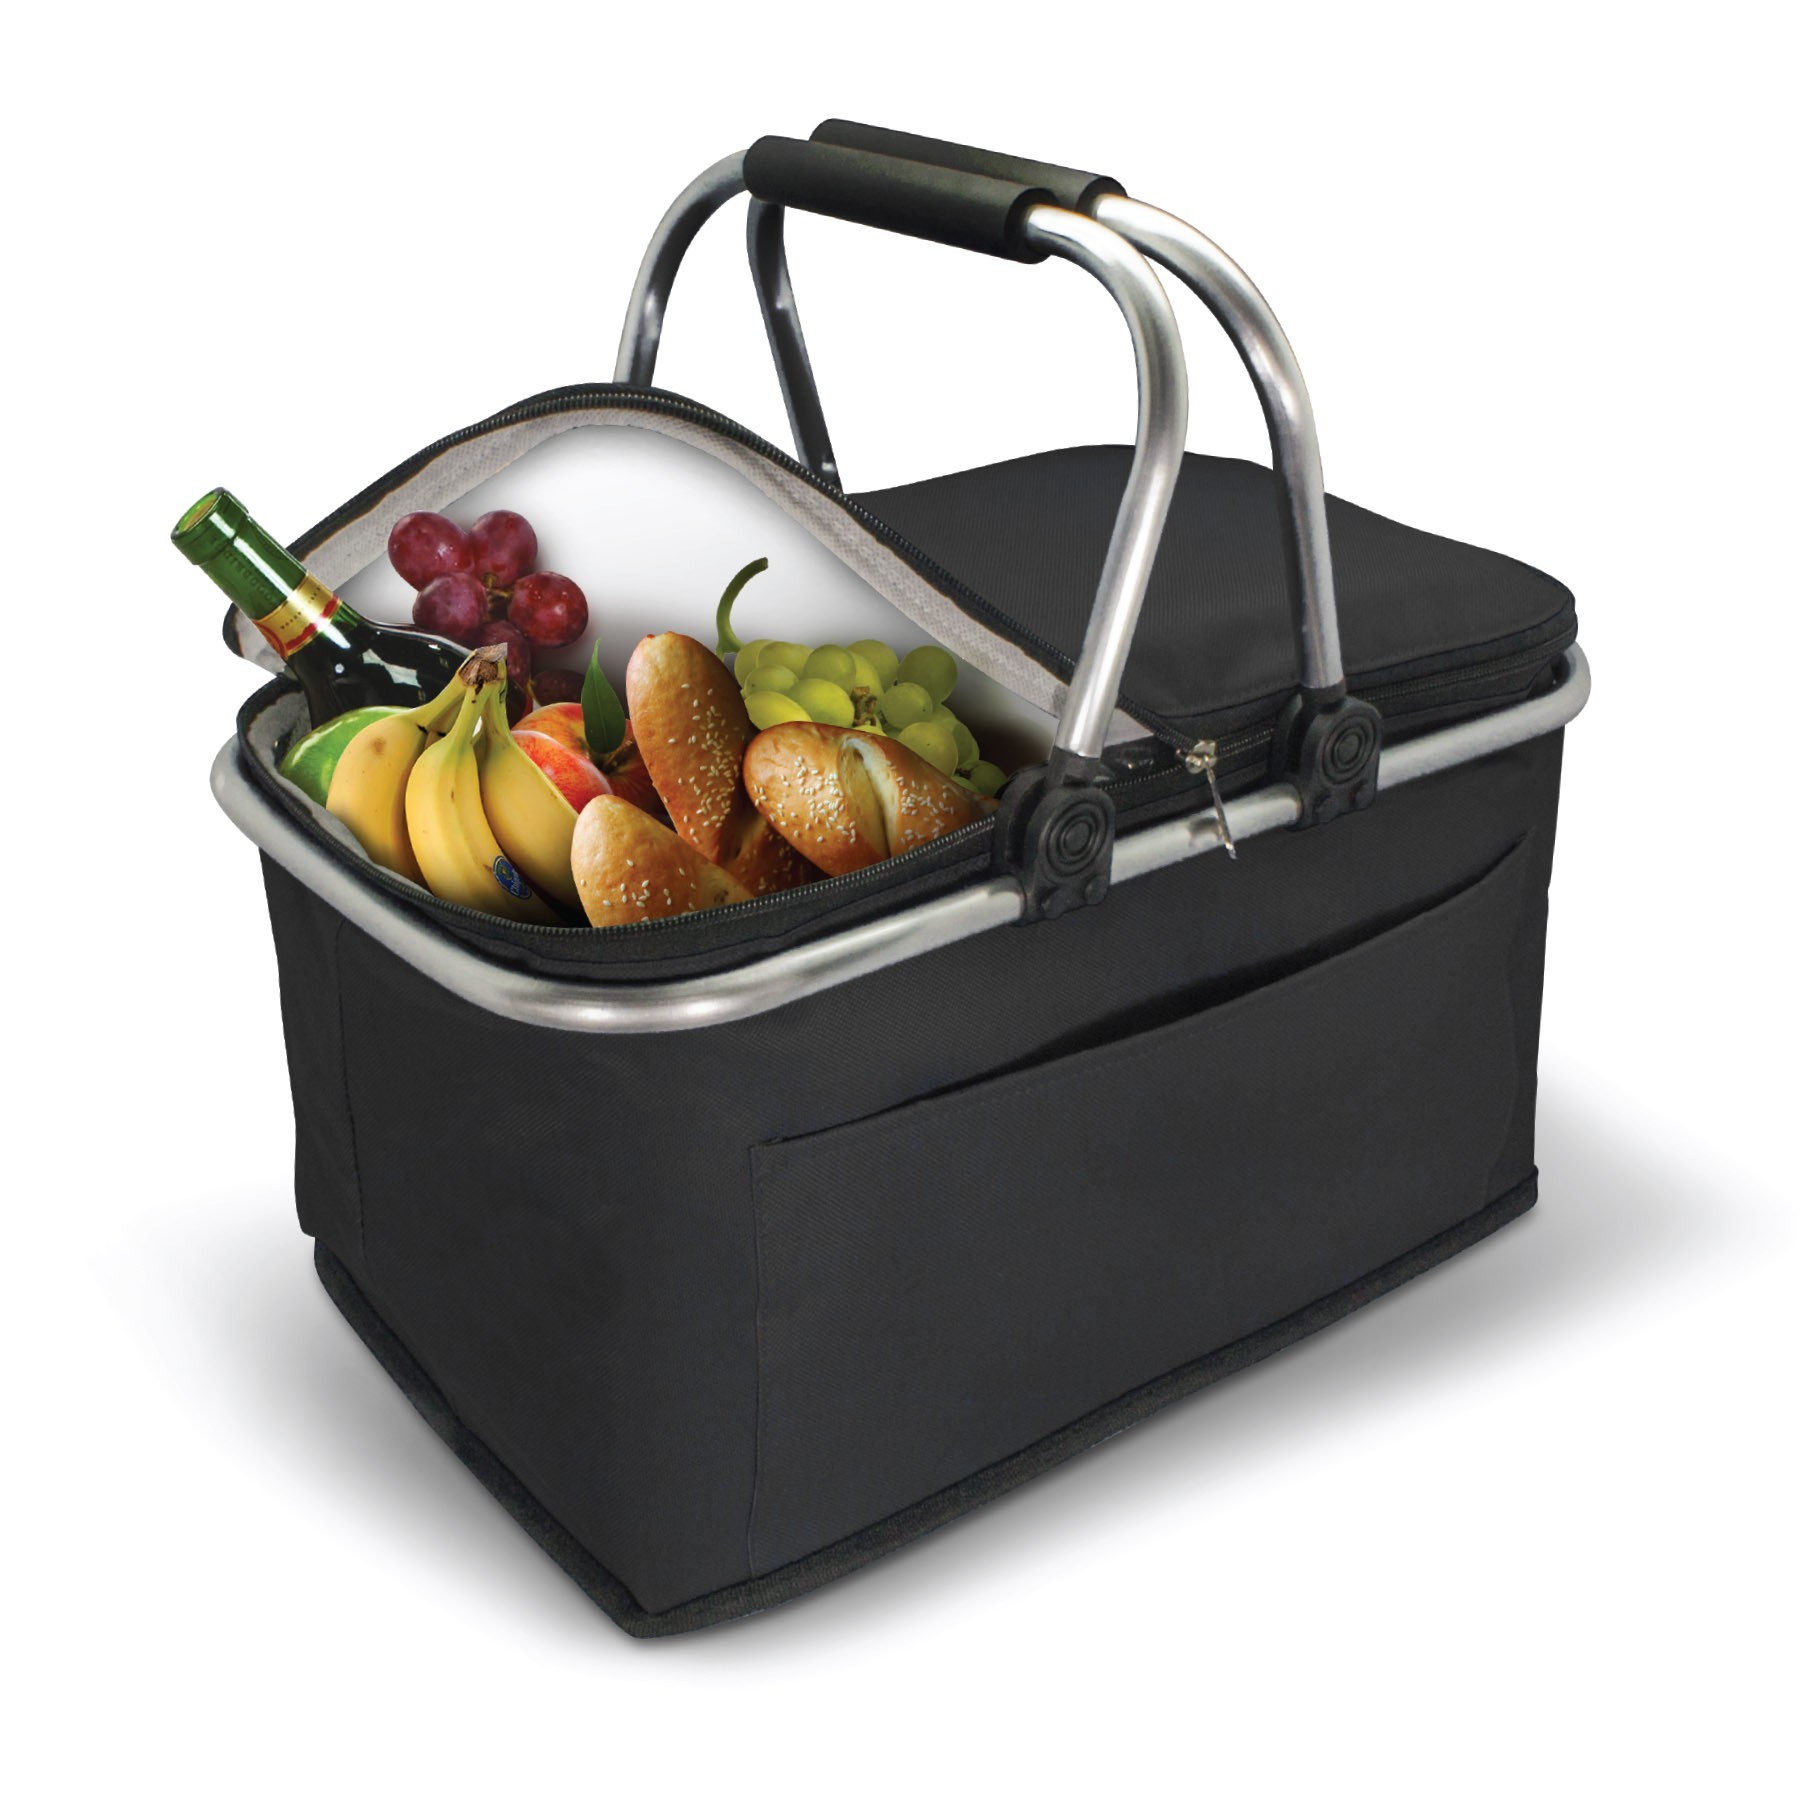 Custom-Insulated-Thermal-Folding-Basket-Food-Delivery-Picnic-Camping-Handbag-Lunch-Basket-Cooler-Bag-Picnic-Basket (4)